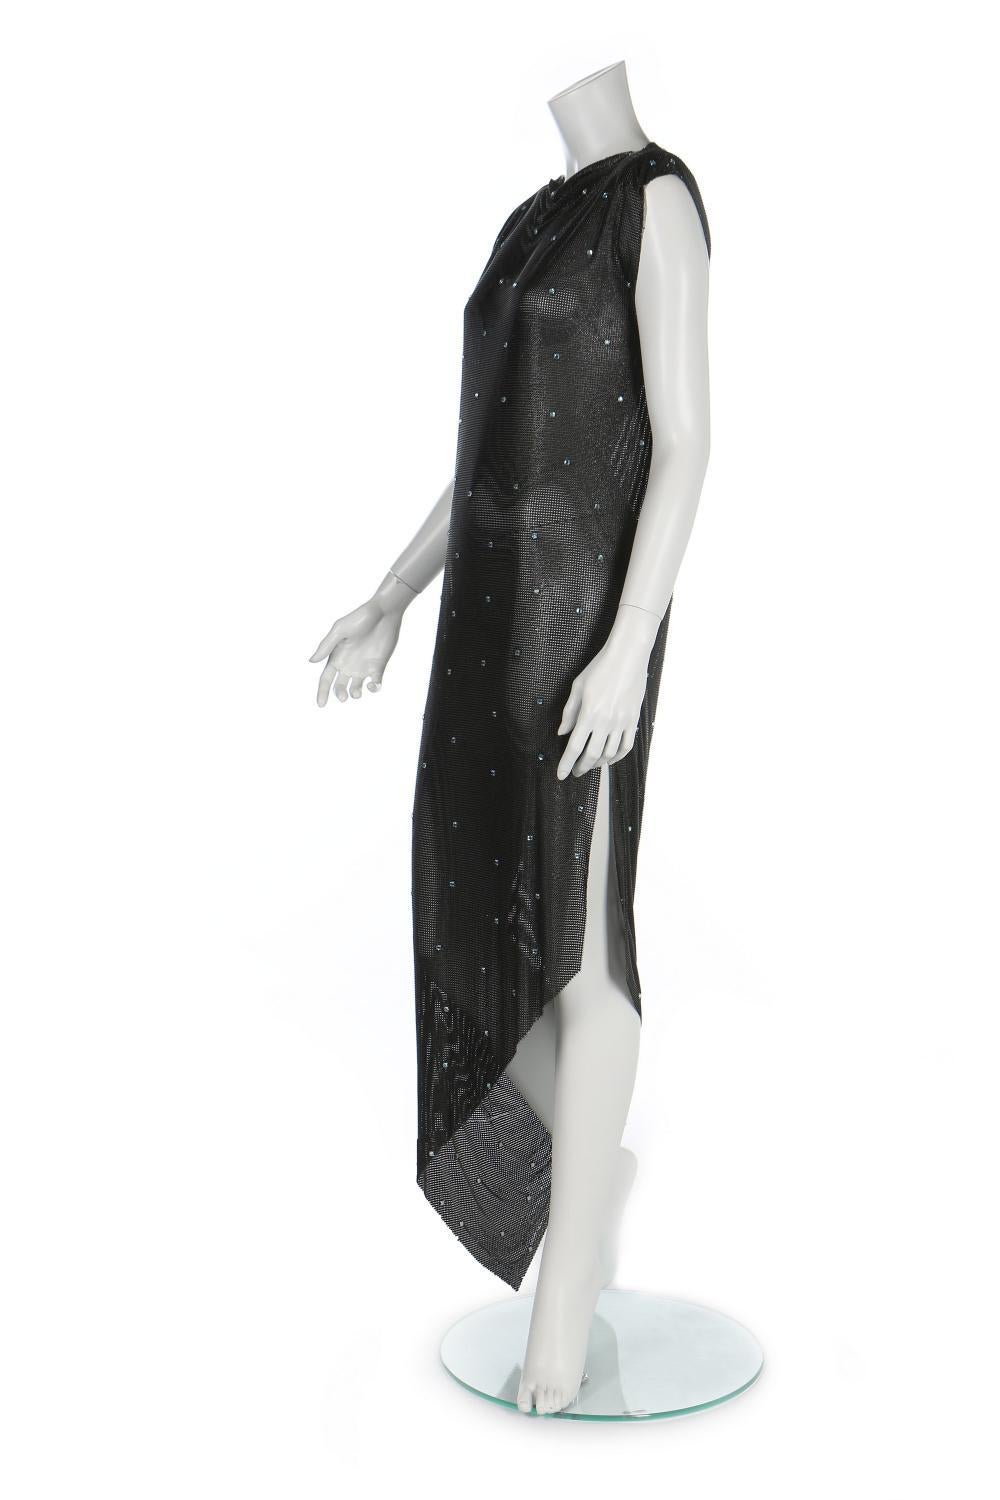 Une ancienne robe en maille orington de Gianni Versace avec cristaux Swarovski
Collection F/W 1983
En 1982, Gianni Versace a conçu un tissu spécial en cotte de mailles qui lui a valu le prix 